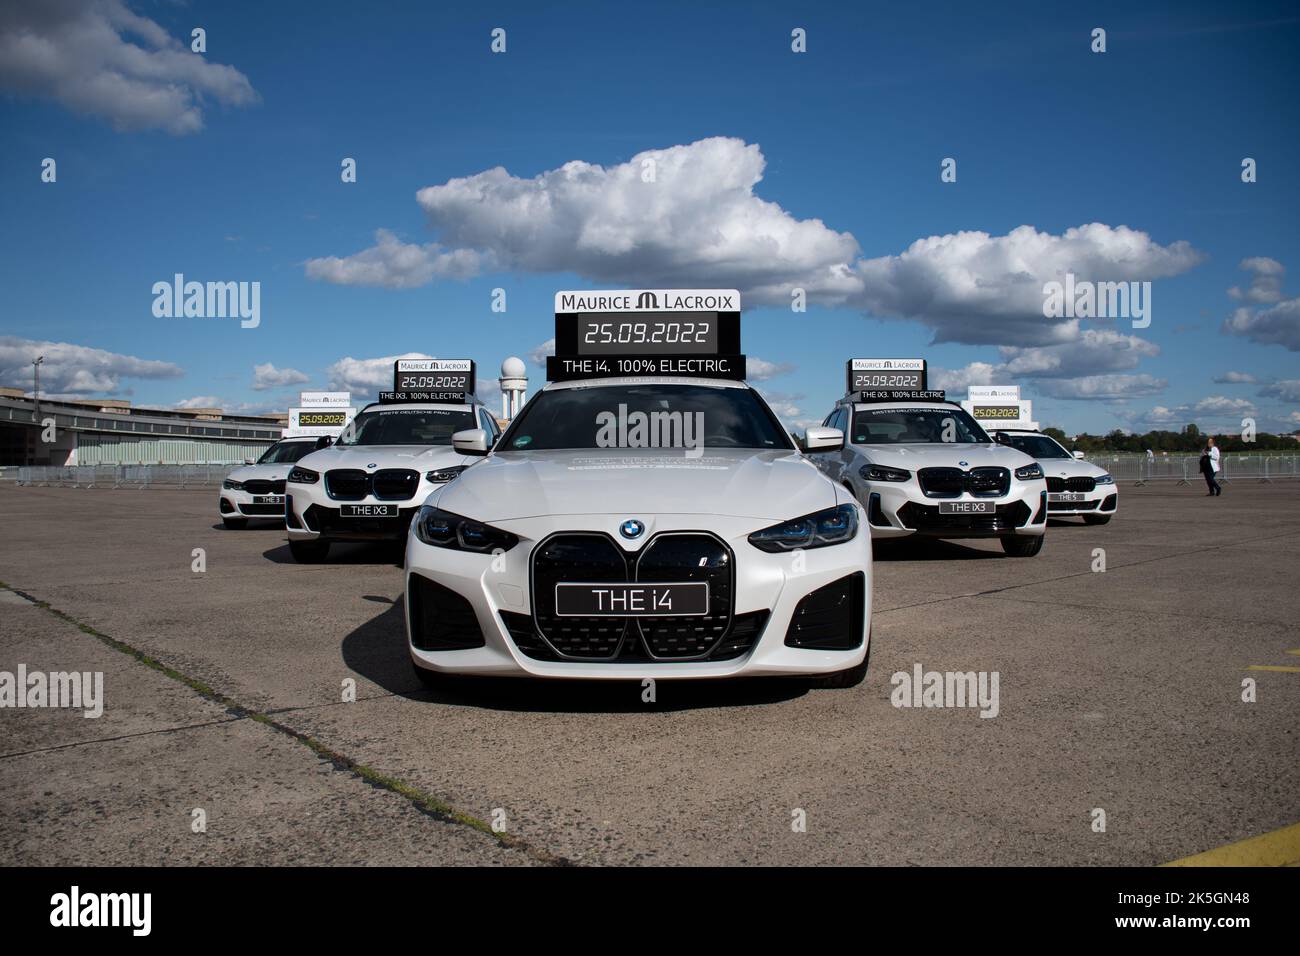 Aufnahme von BMW Timing Autos für den Berlin Marathon 2022 am Flughafen Tempelhof, Berlin, Deutschland Stockfoto